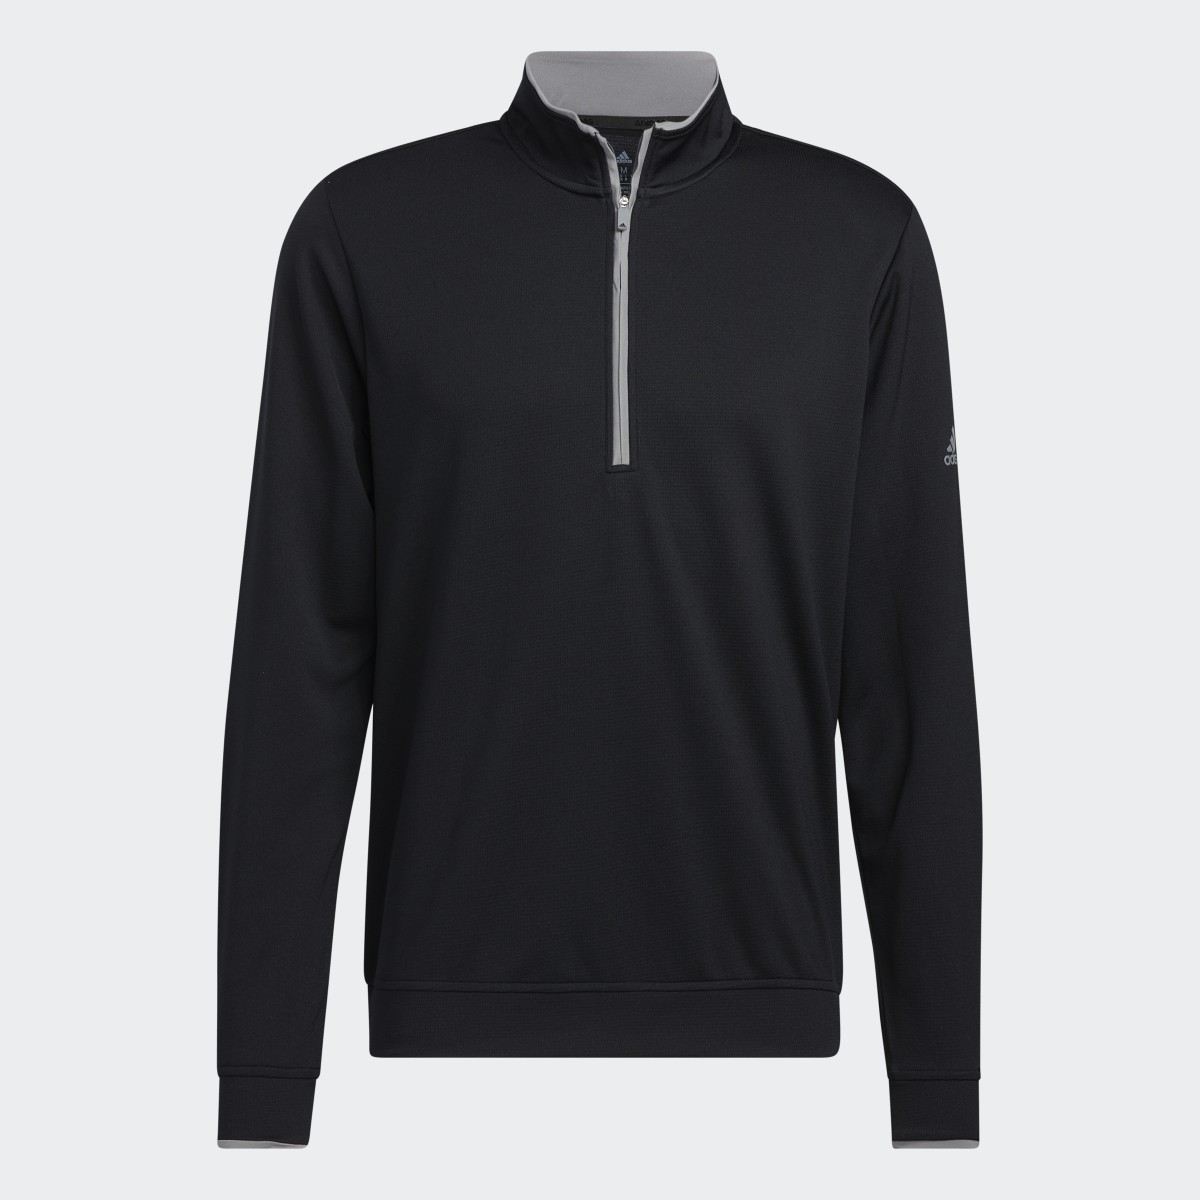 Adidas Quarter-Zip Sweatshirt. 5